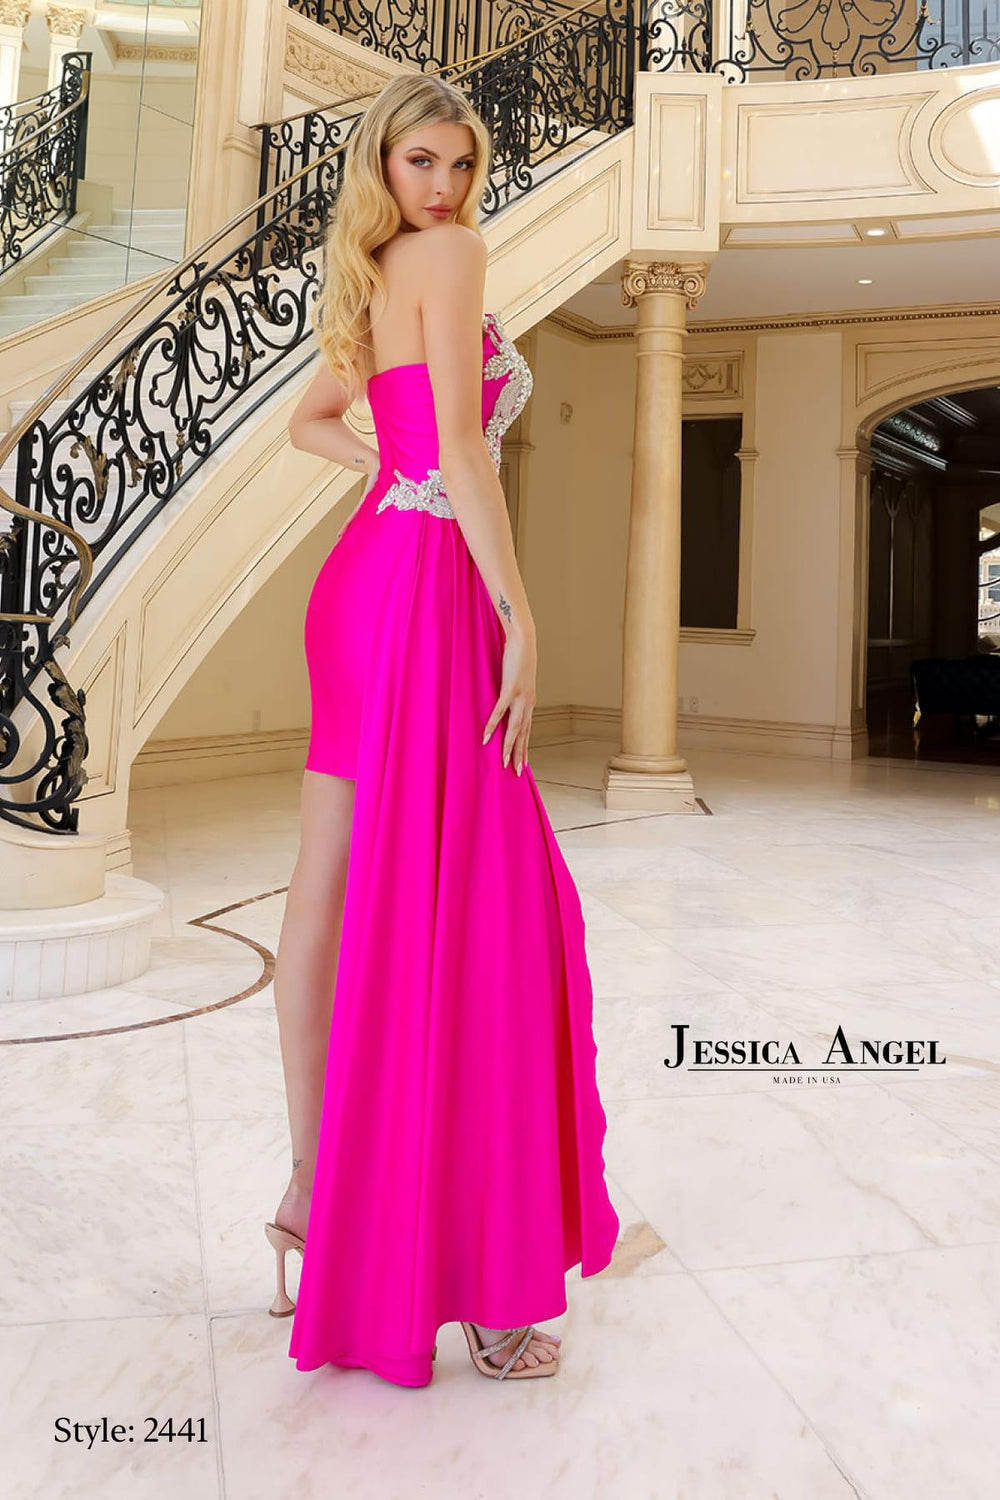 JESSICA ANGEL JA2441 DRESS - FOSTANI